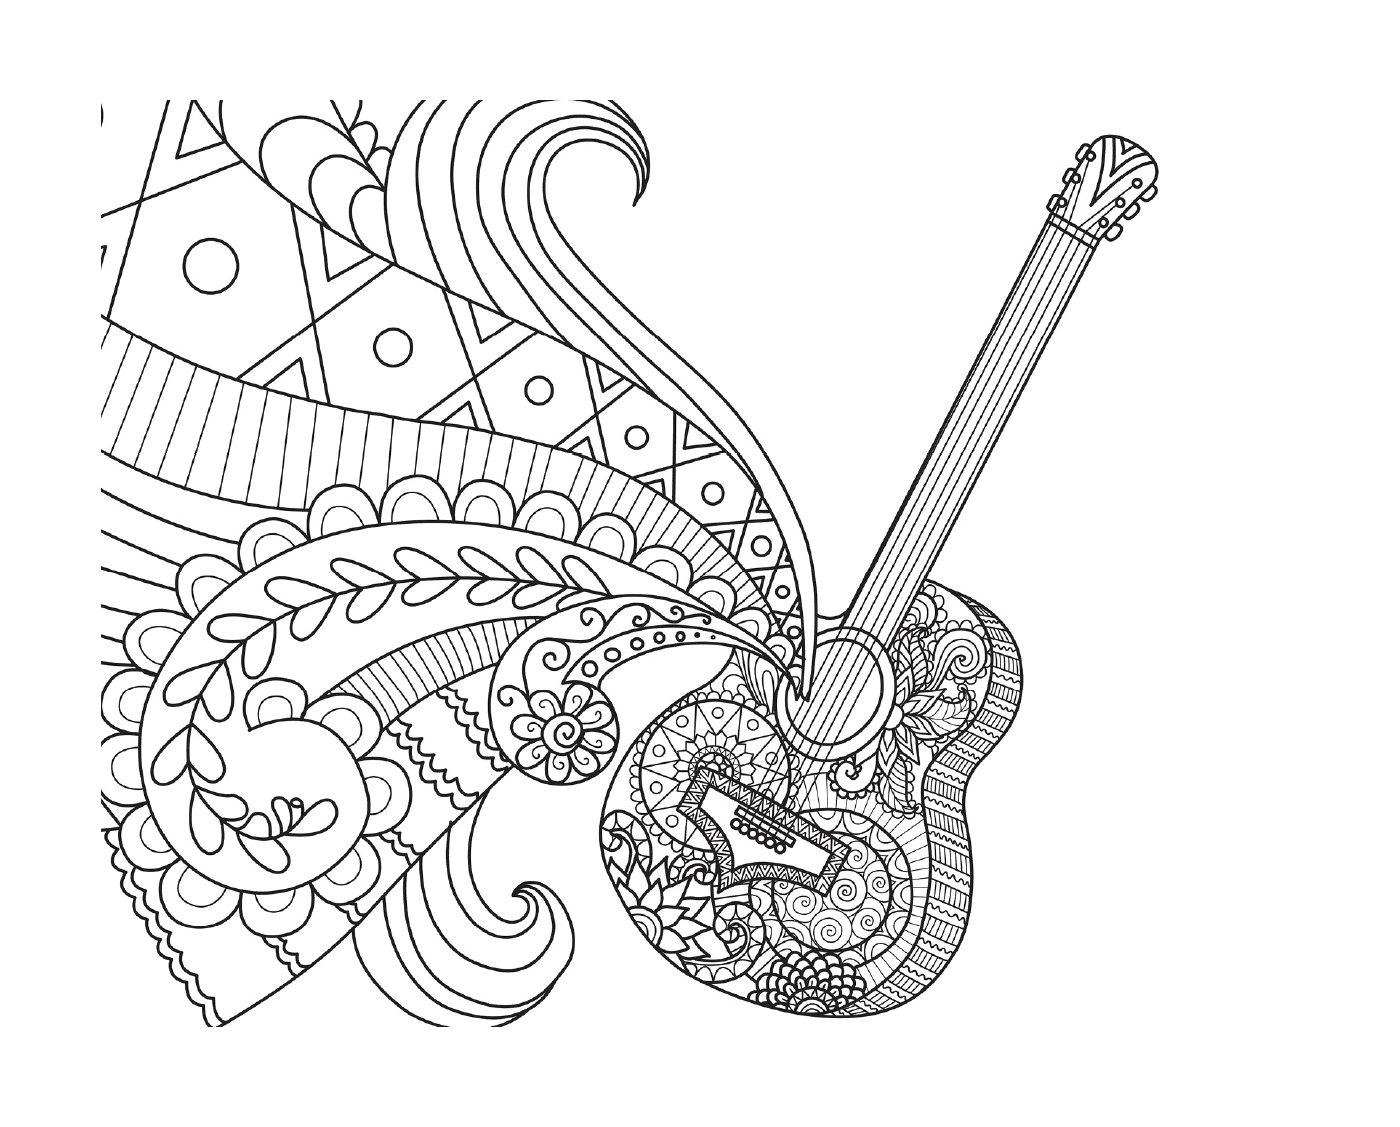   Guitare de Coco par Bimbimkha 